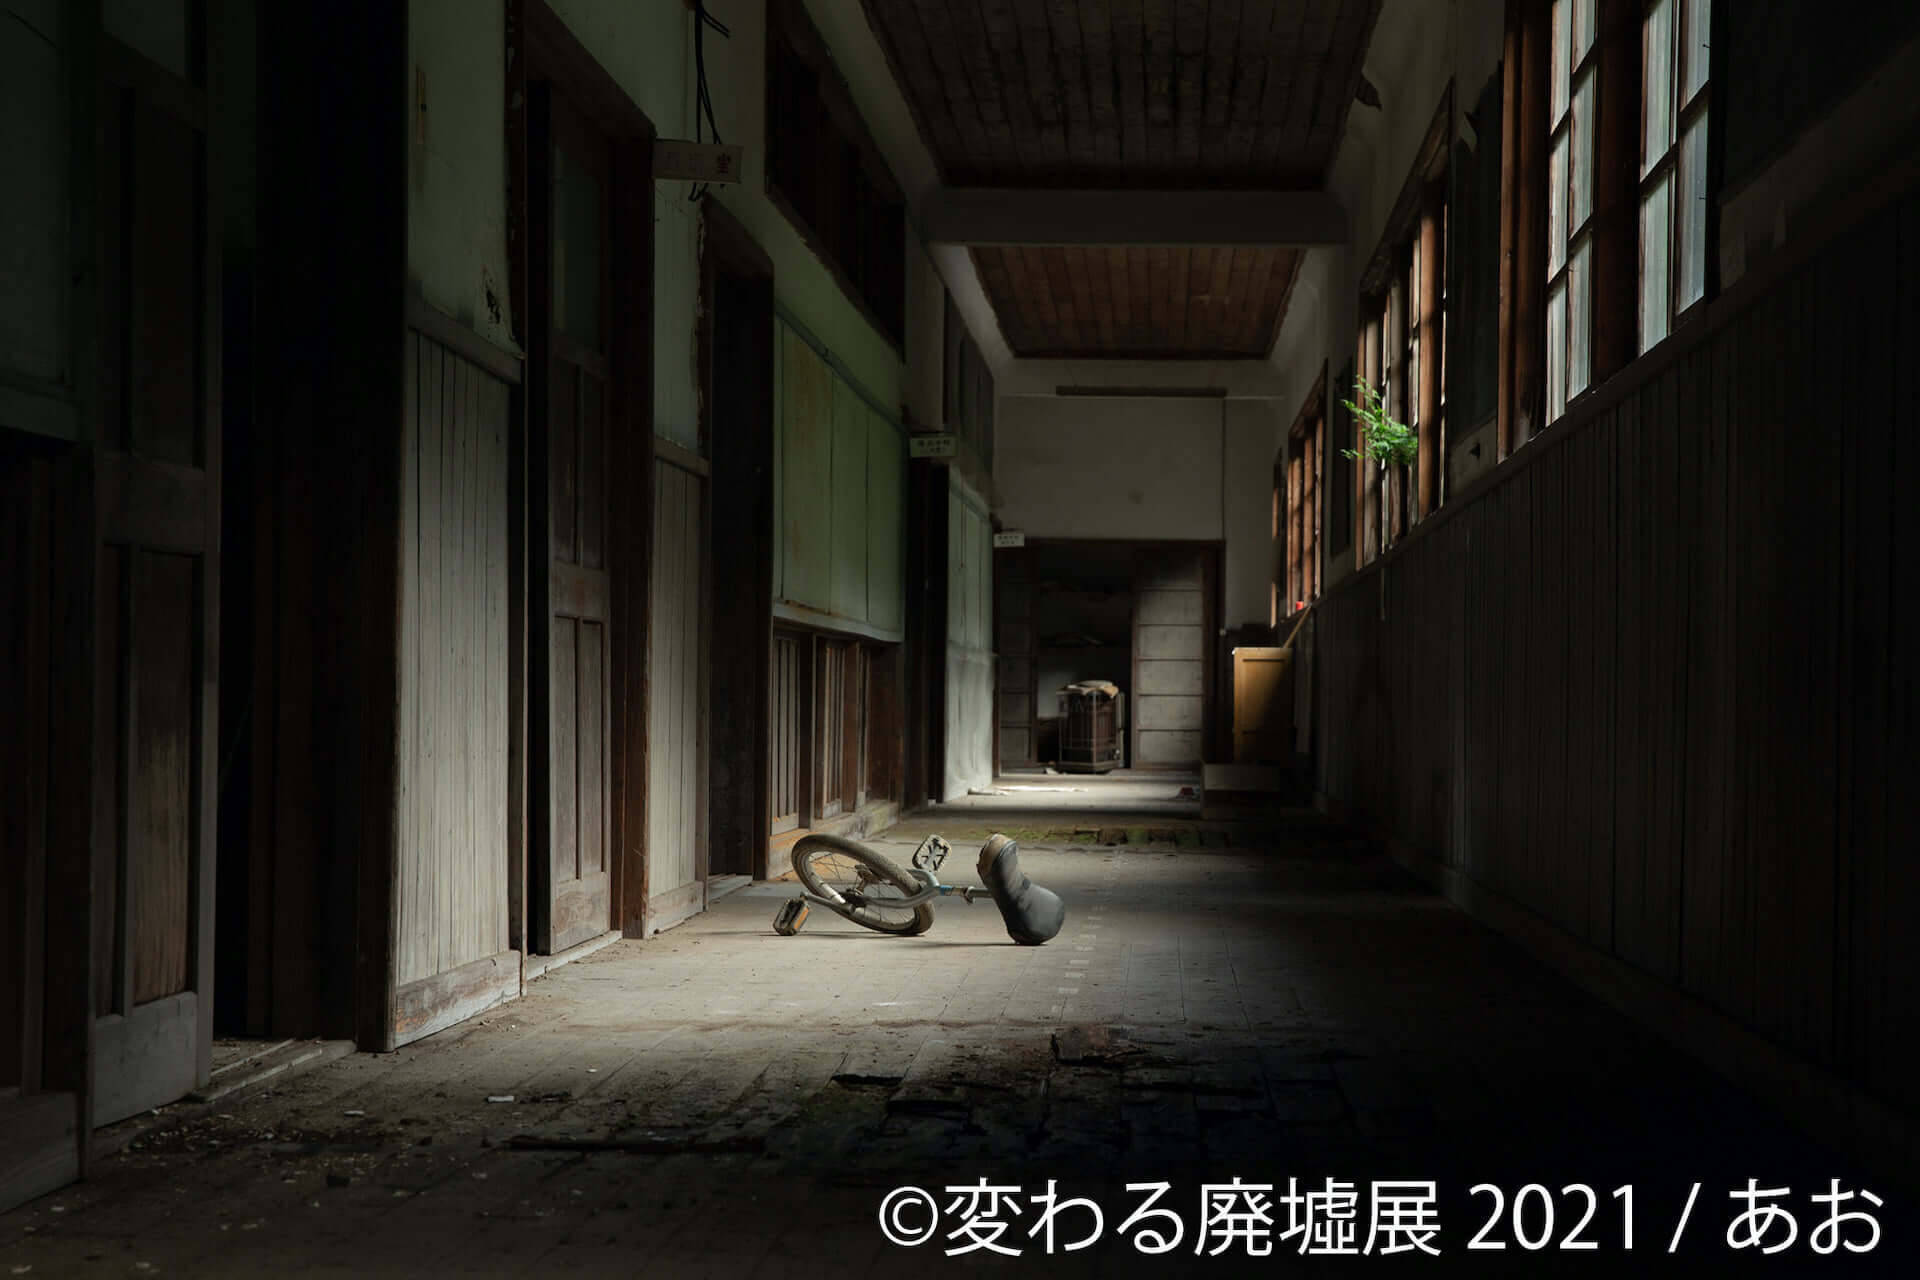 美しい廃墟の合同写真展 変わる廃墟展 21 が東京 名古屋で開催決定 未公開の廃墟動画も放映 21年3月3日 エキサイトニュース